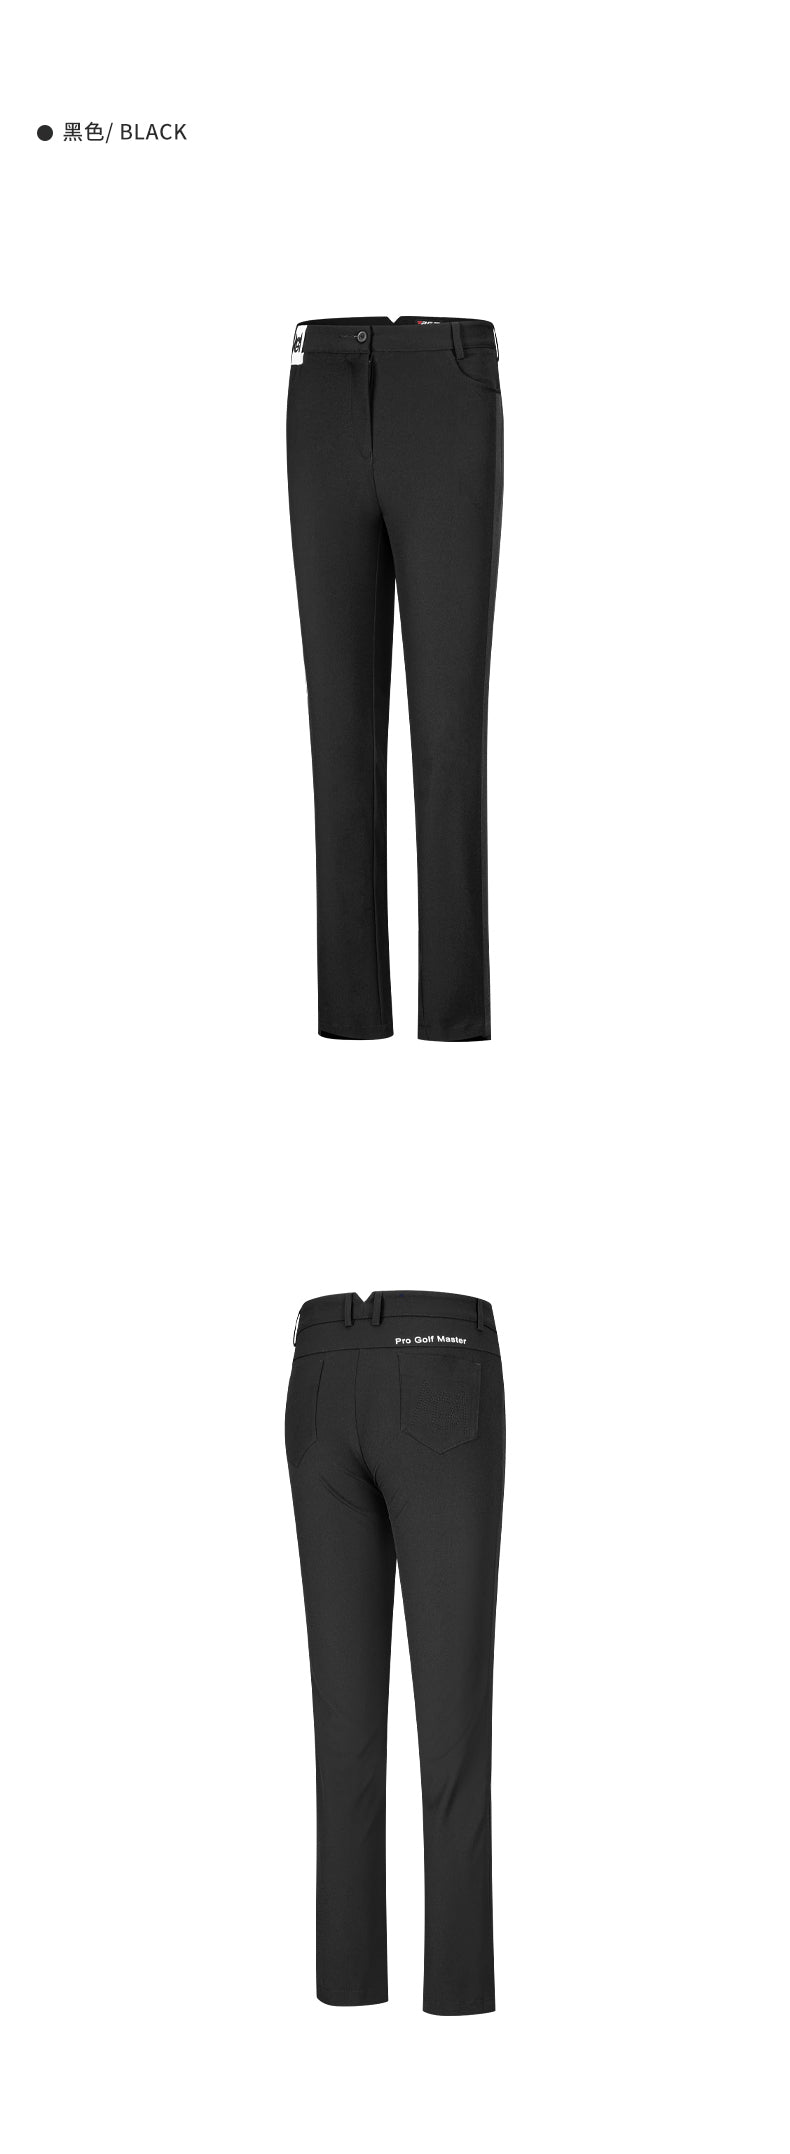 Light Grey Commuter Men's Dress Pants - Truwear